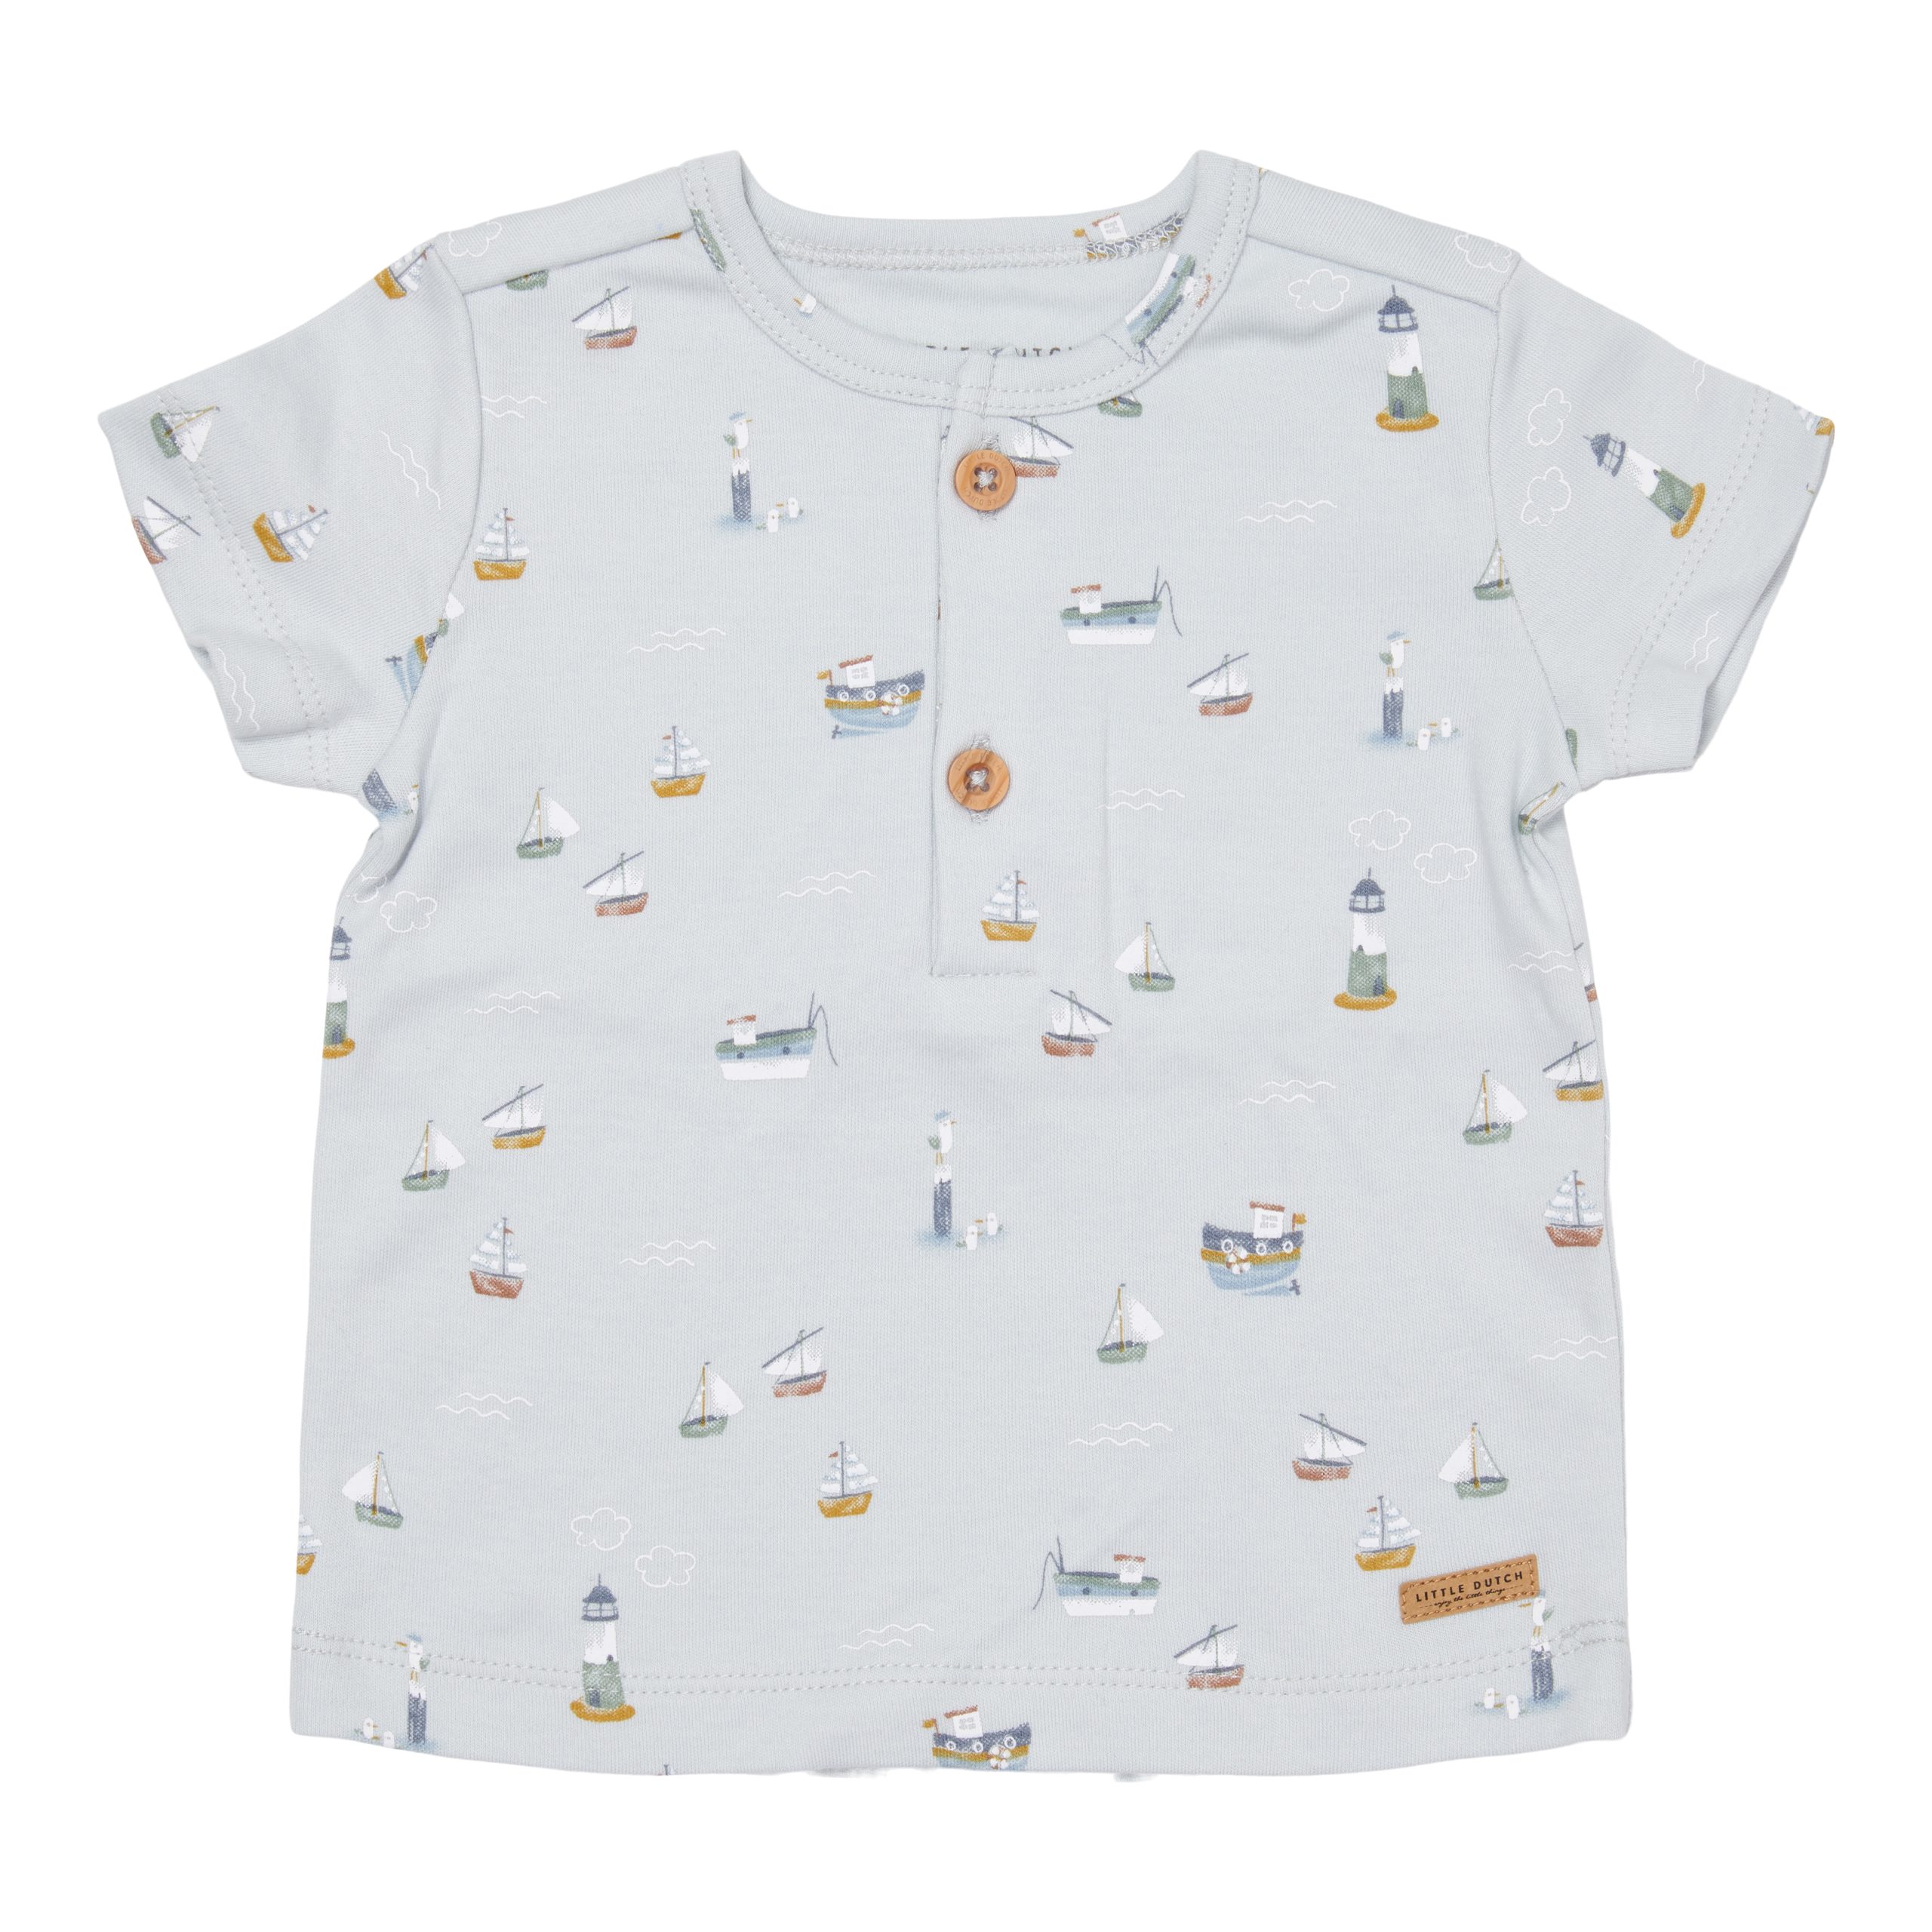 CL12043112 - T-shirt Short Sleeve - Sailors Bay - (1)